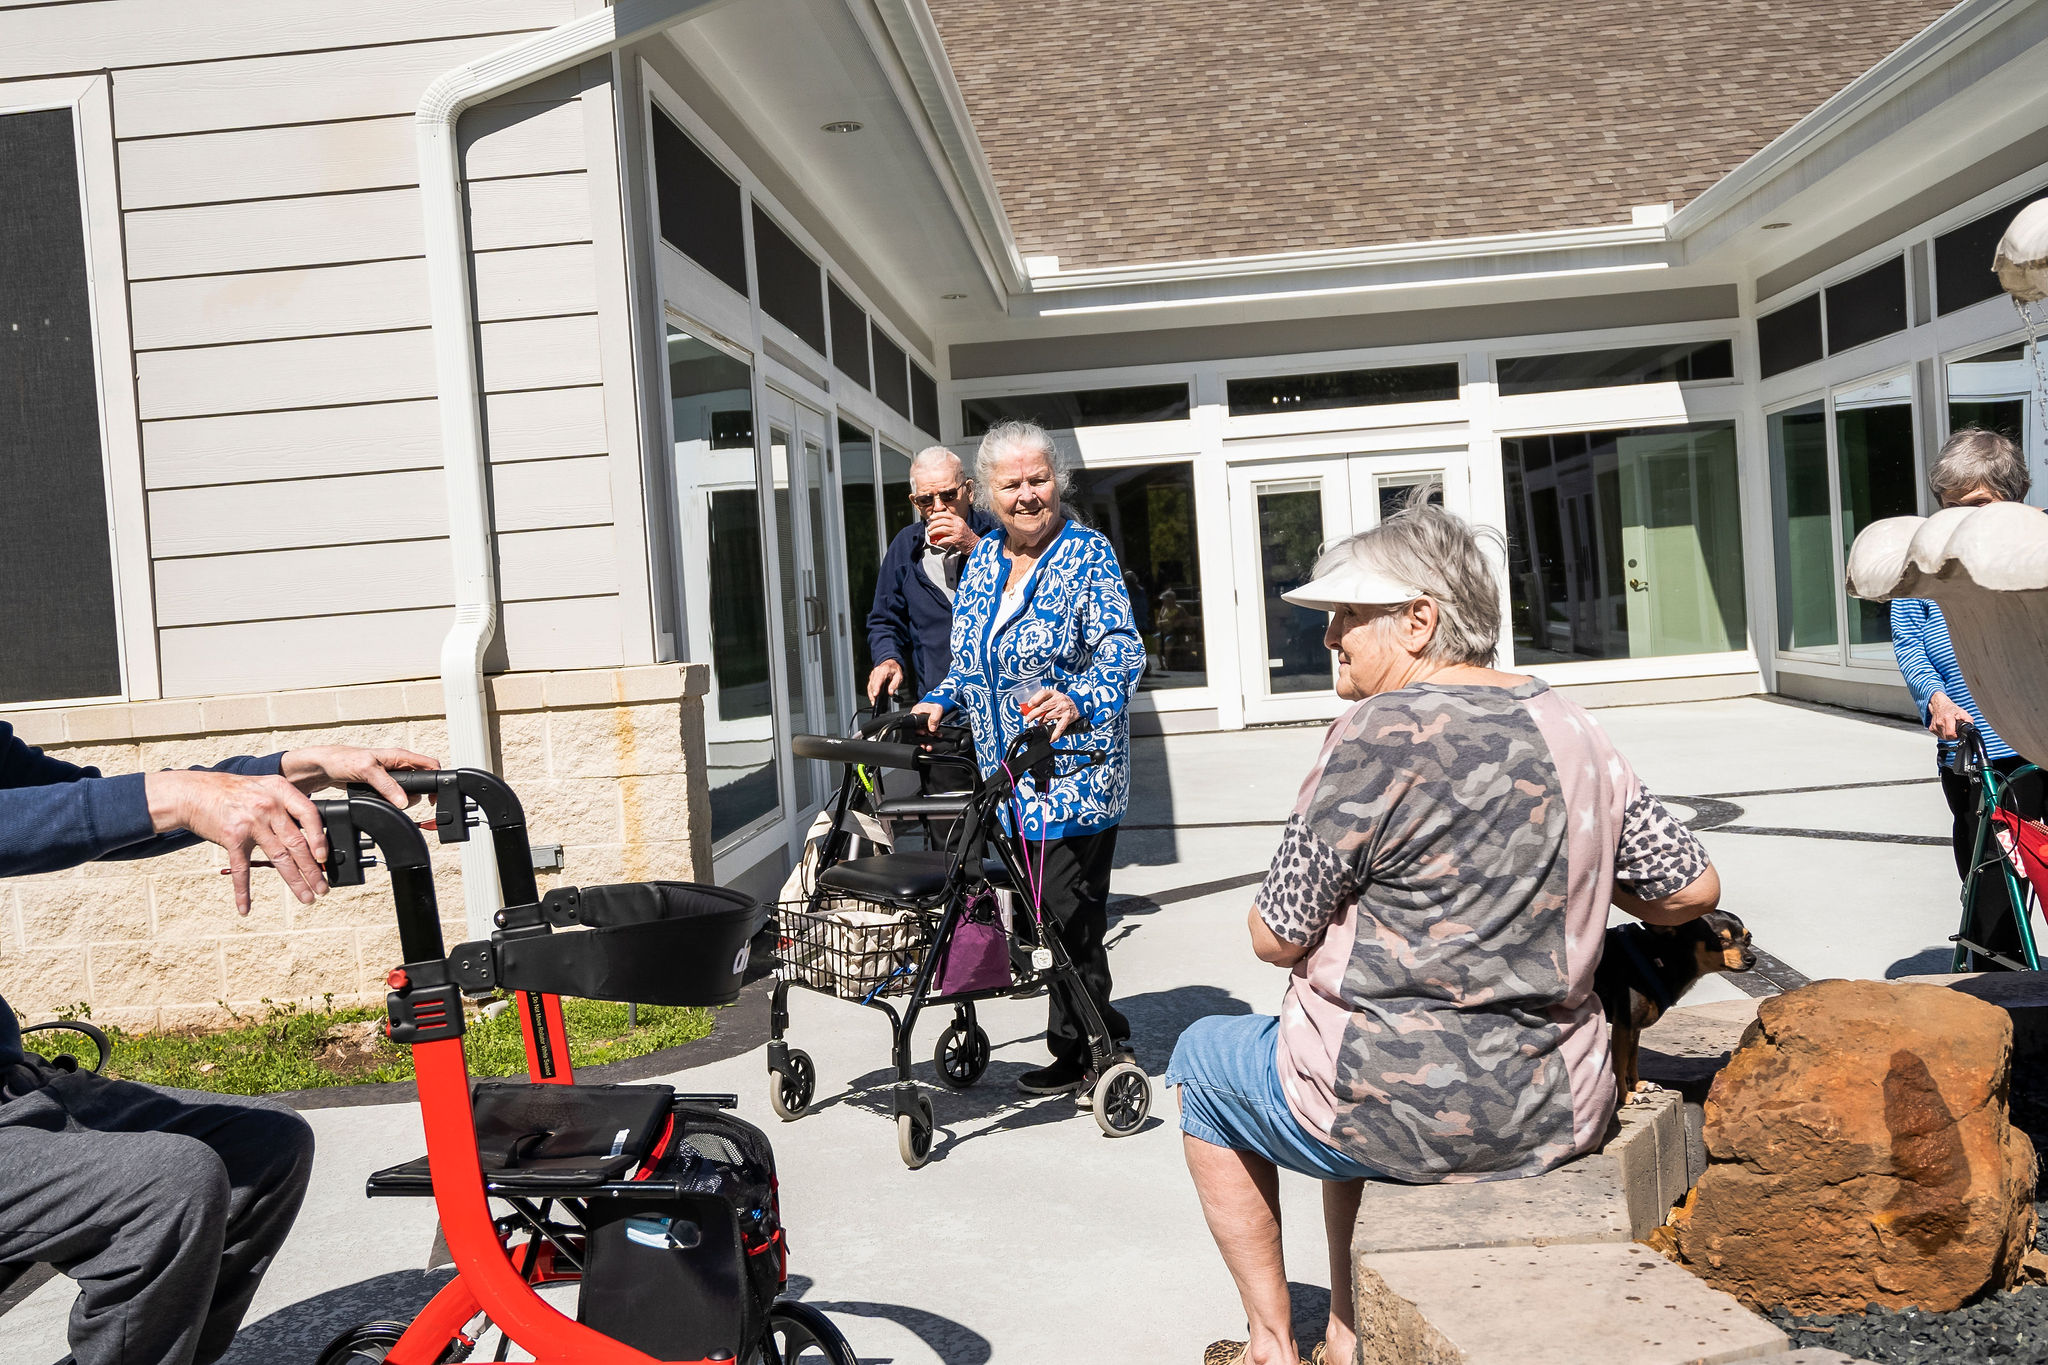 Sundale Senior Living residents spending time together outside